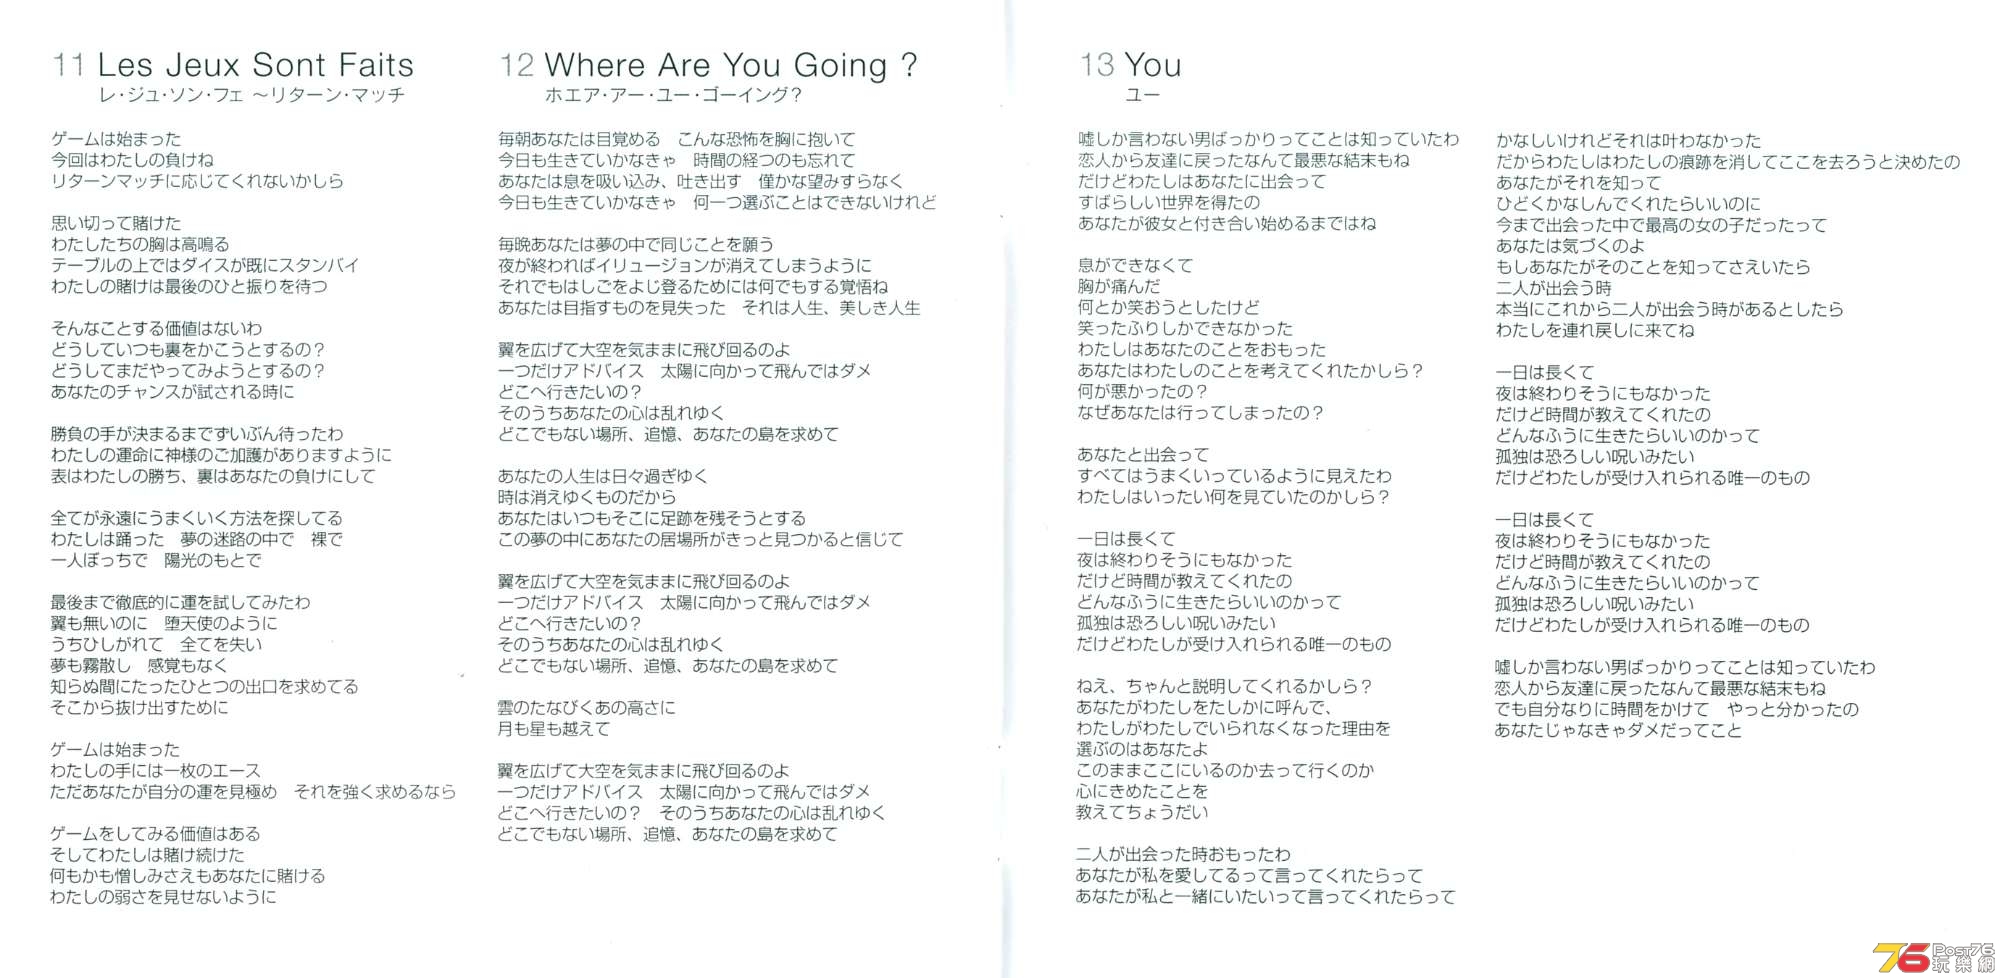 19 - A Fraction Of You (Japan) - booklet (japan) 6.jpg